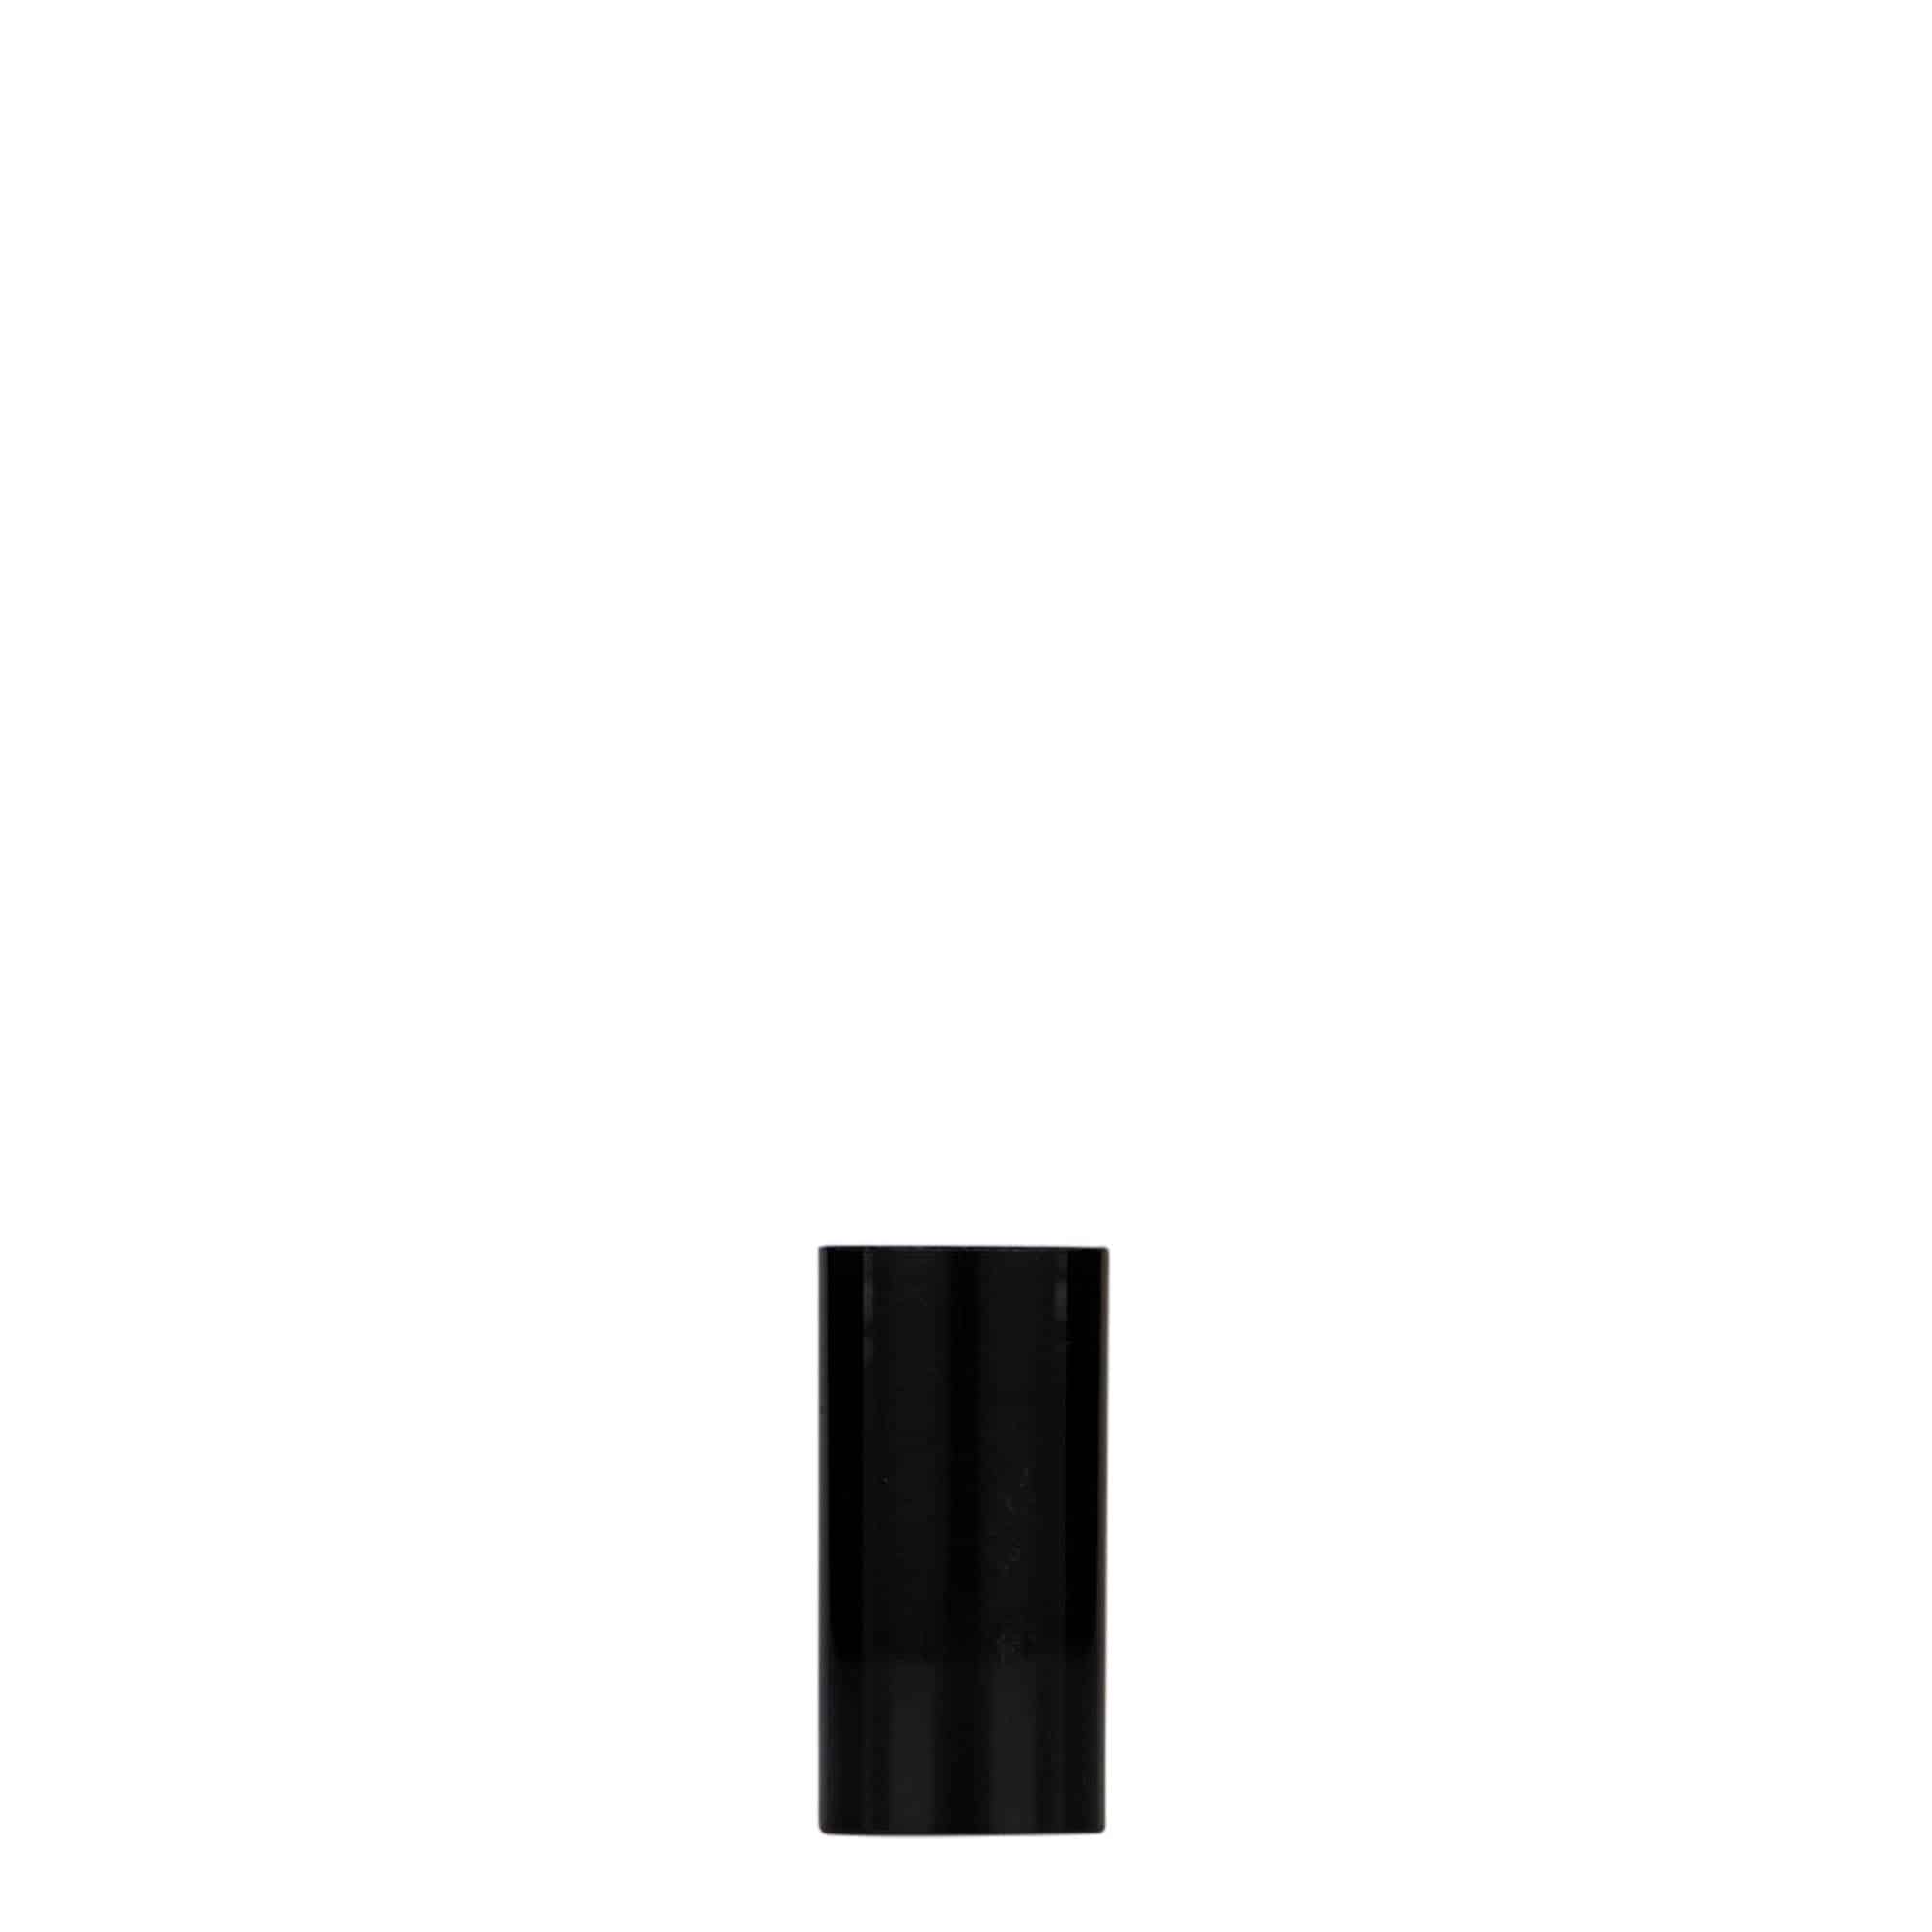 Bezvzduchový dávkovač 5 ml 'Nano', plast PP, černý